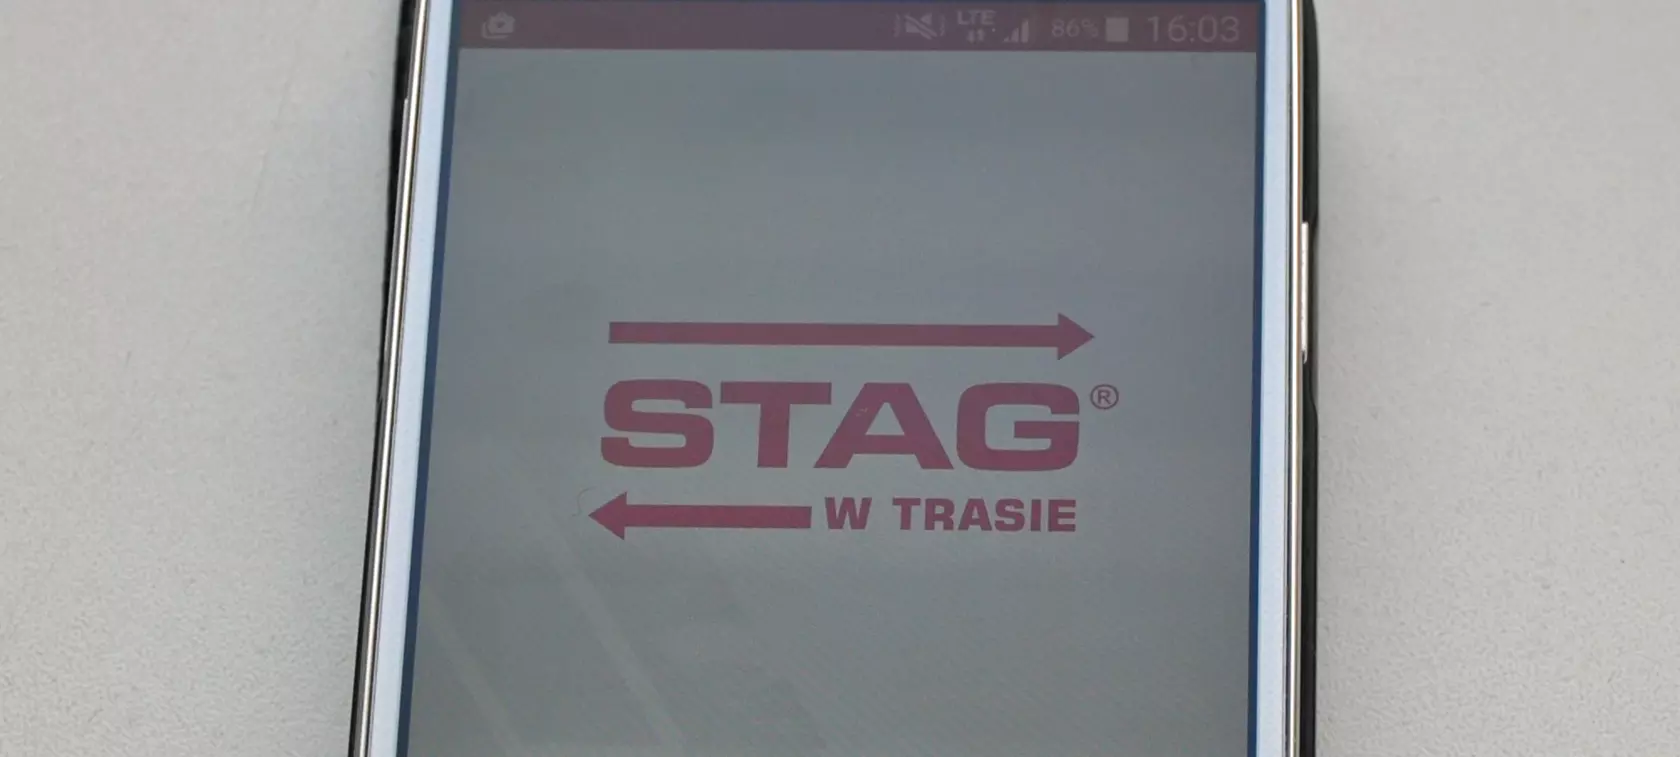 STAG w Trasie - gazowa nawigacja